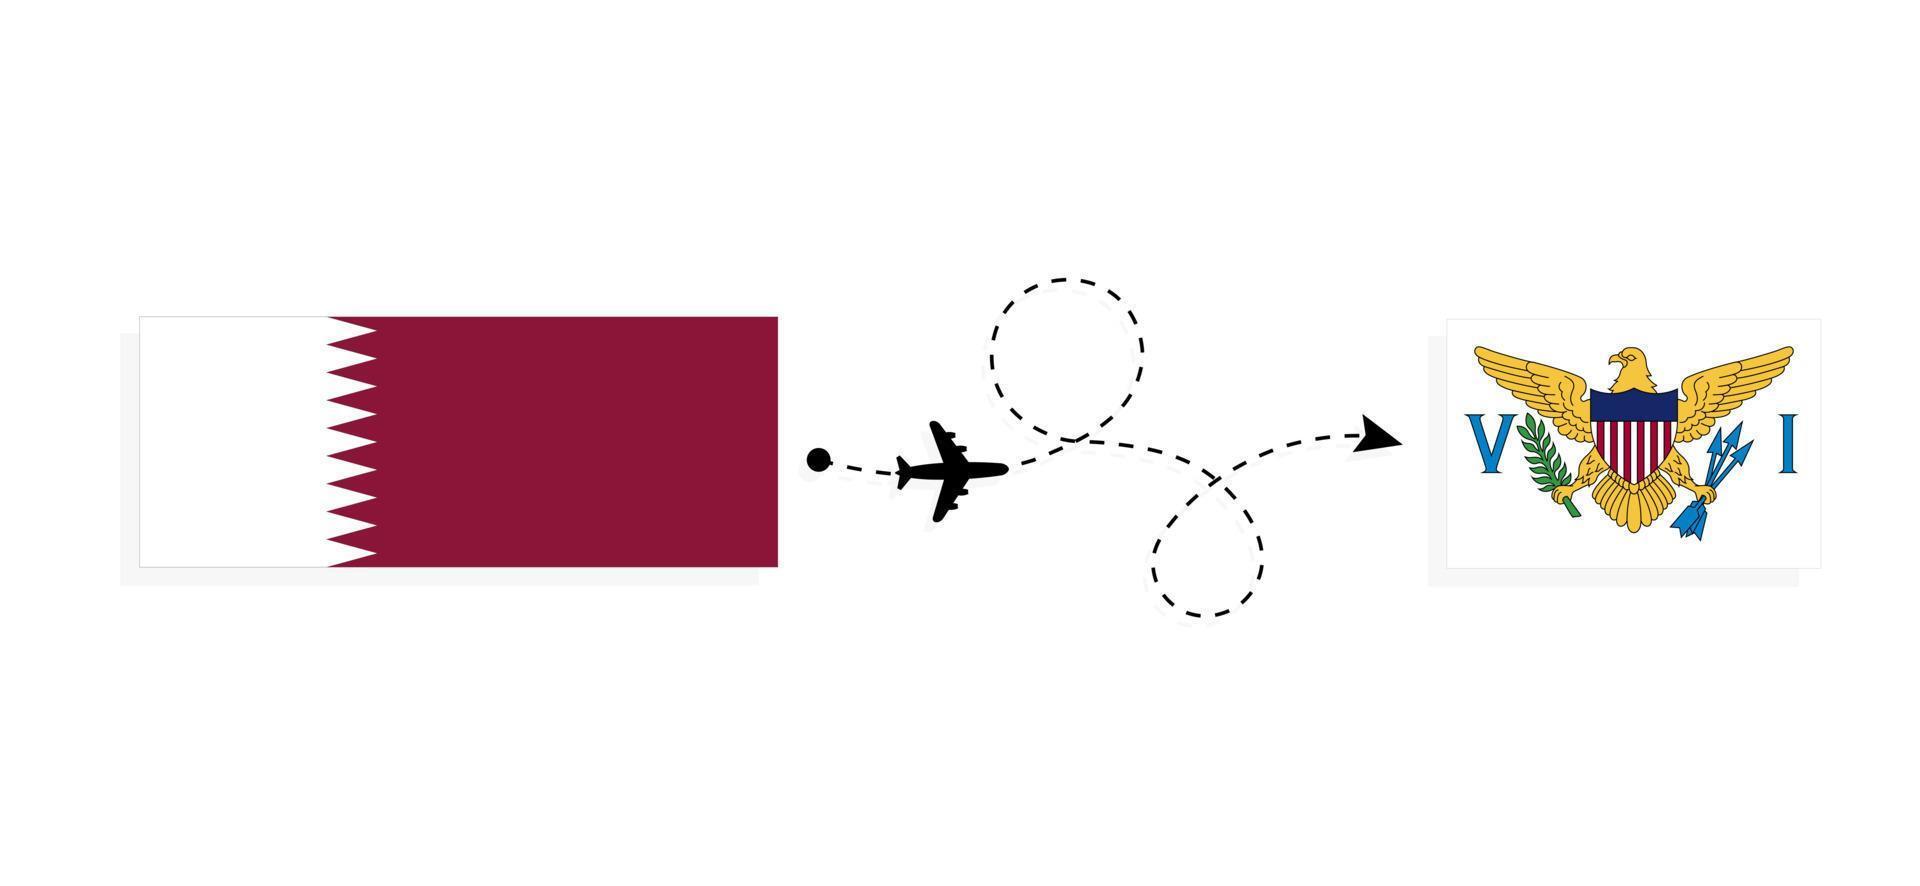 vol et voyage du qatar aux îles vierges américaines par concept de voyage en avion de passagers vecteur